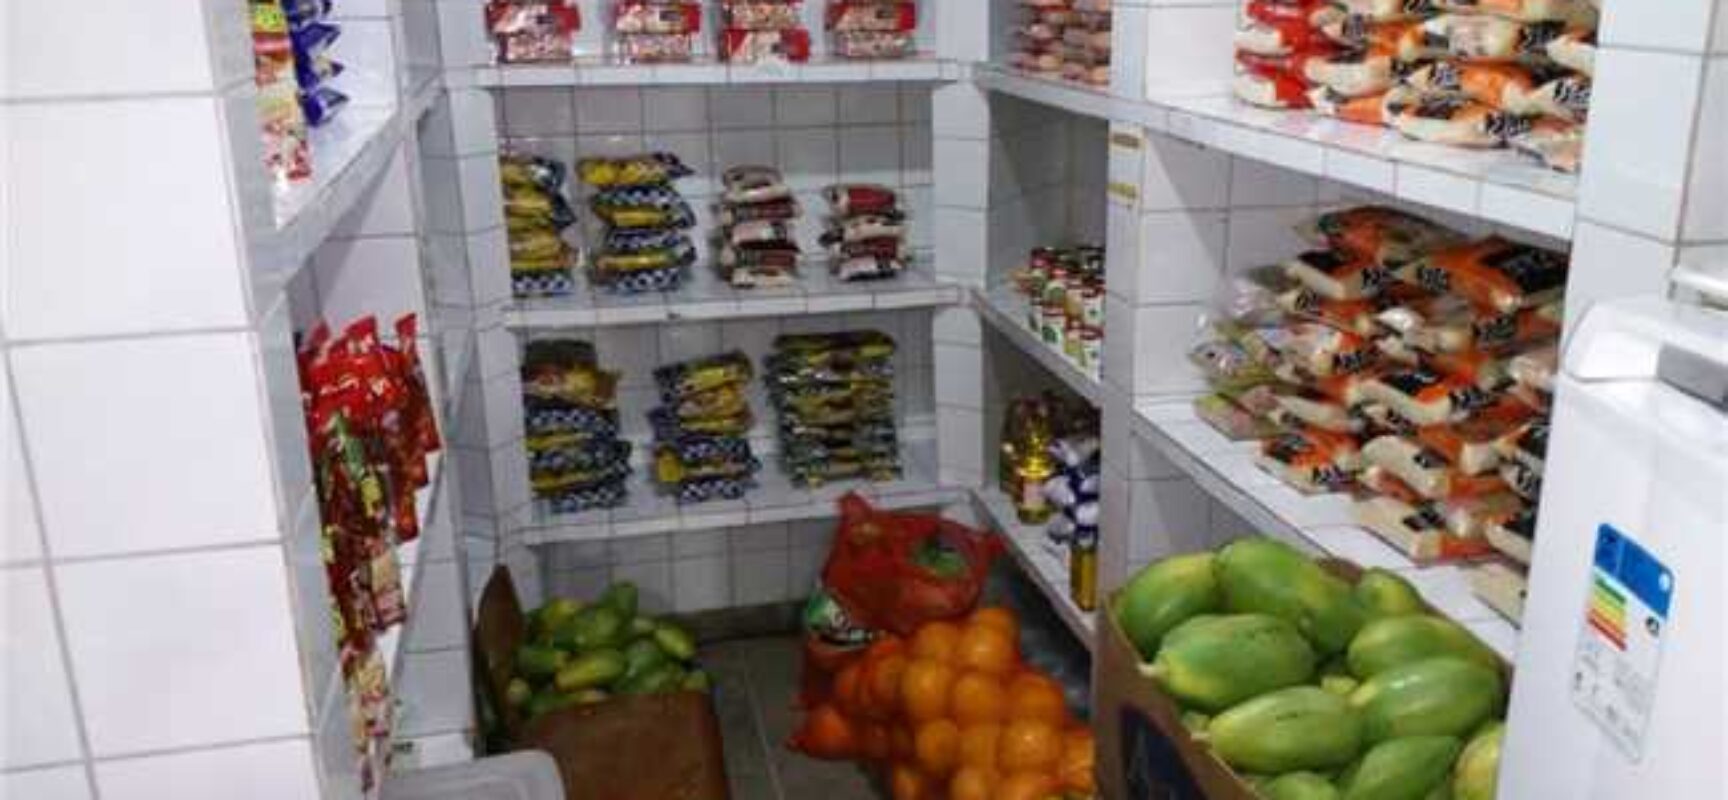 Escolas da rede municipal de Ilhéus recebem nova remessa de alimentos da Agricultura Familiar